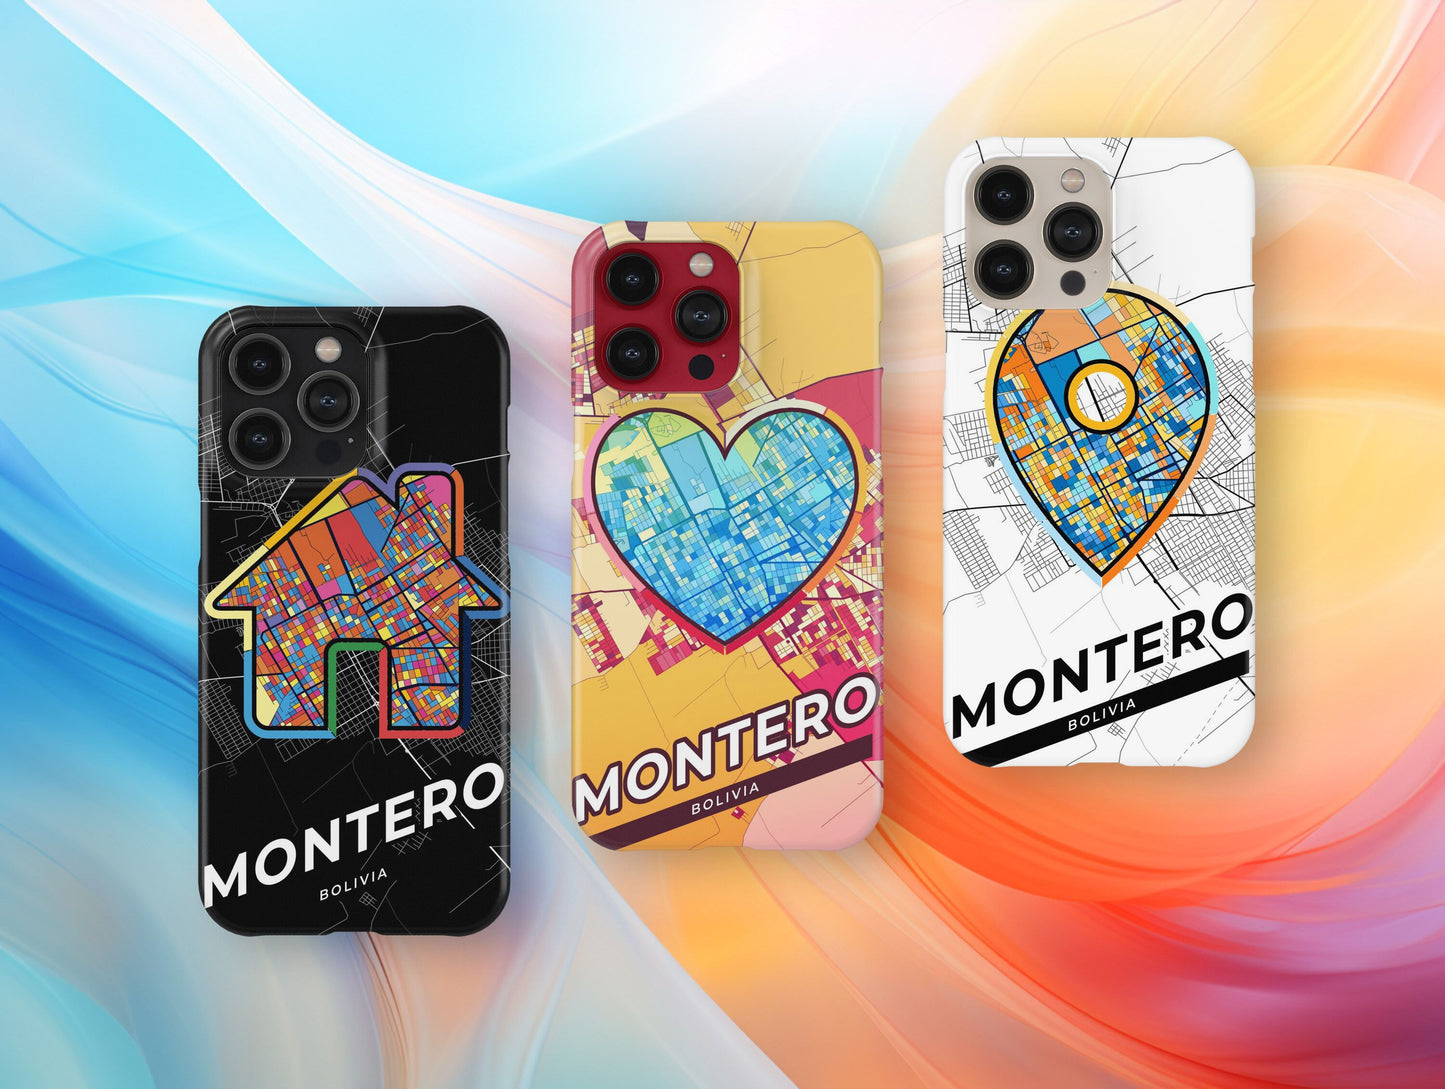 Montero Bolivia slim phone case with colorful icon